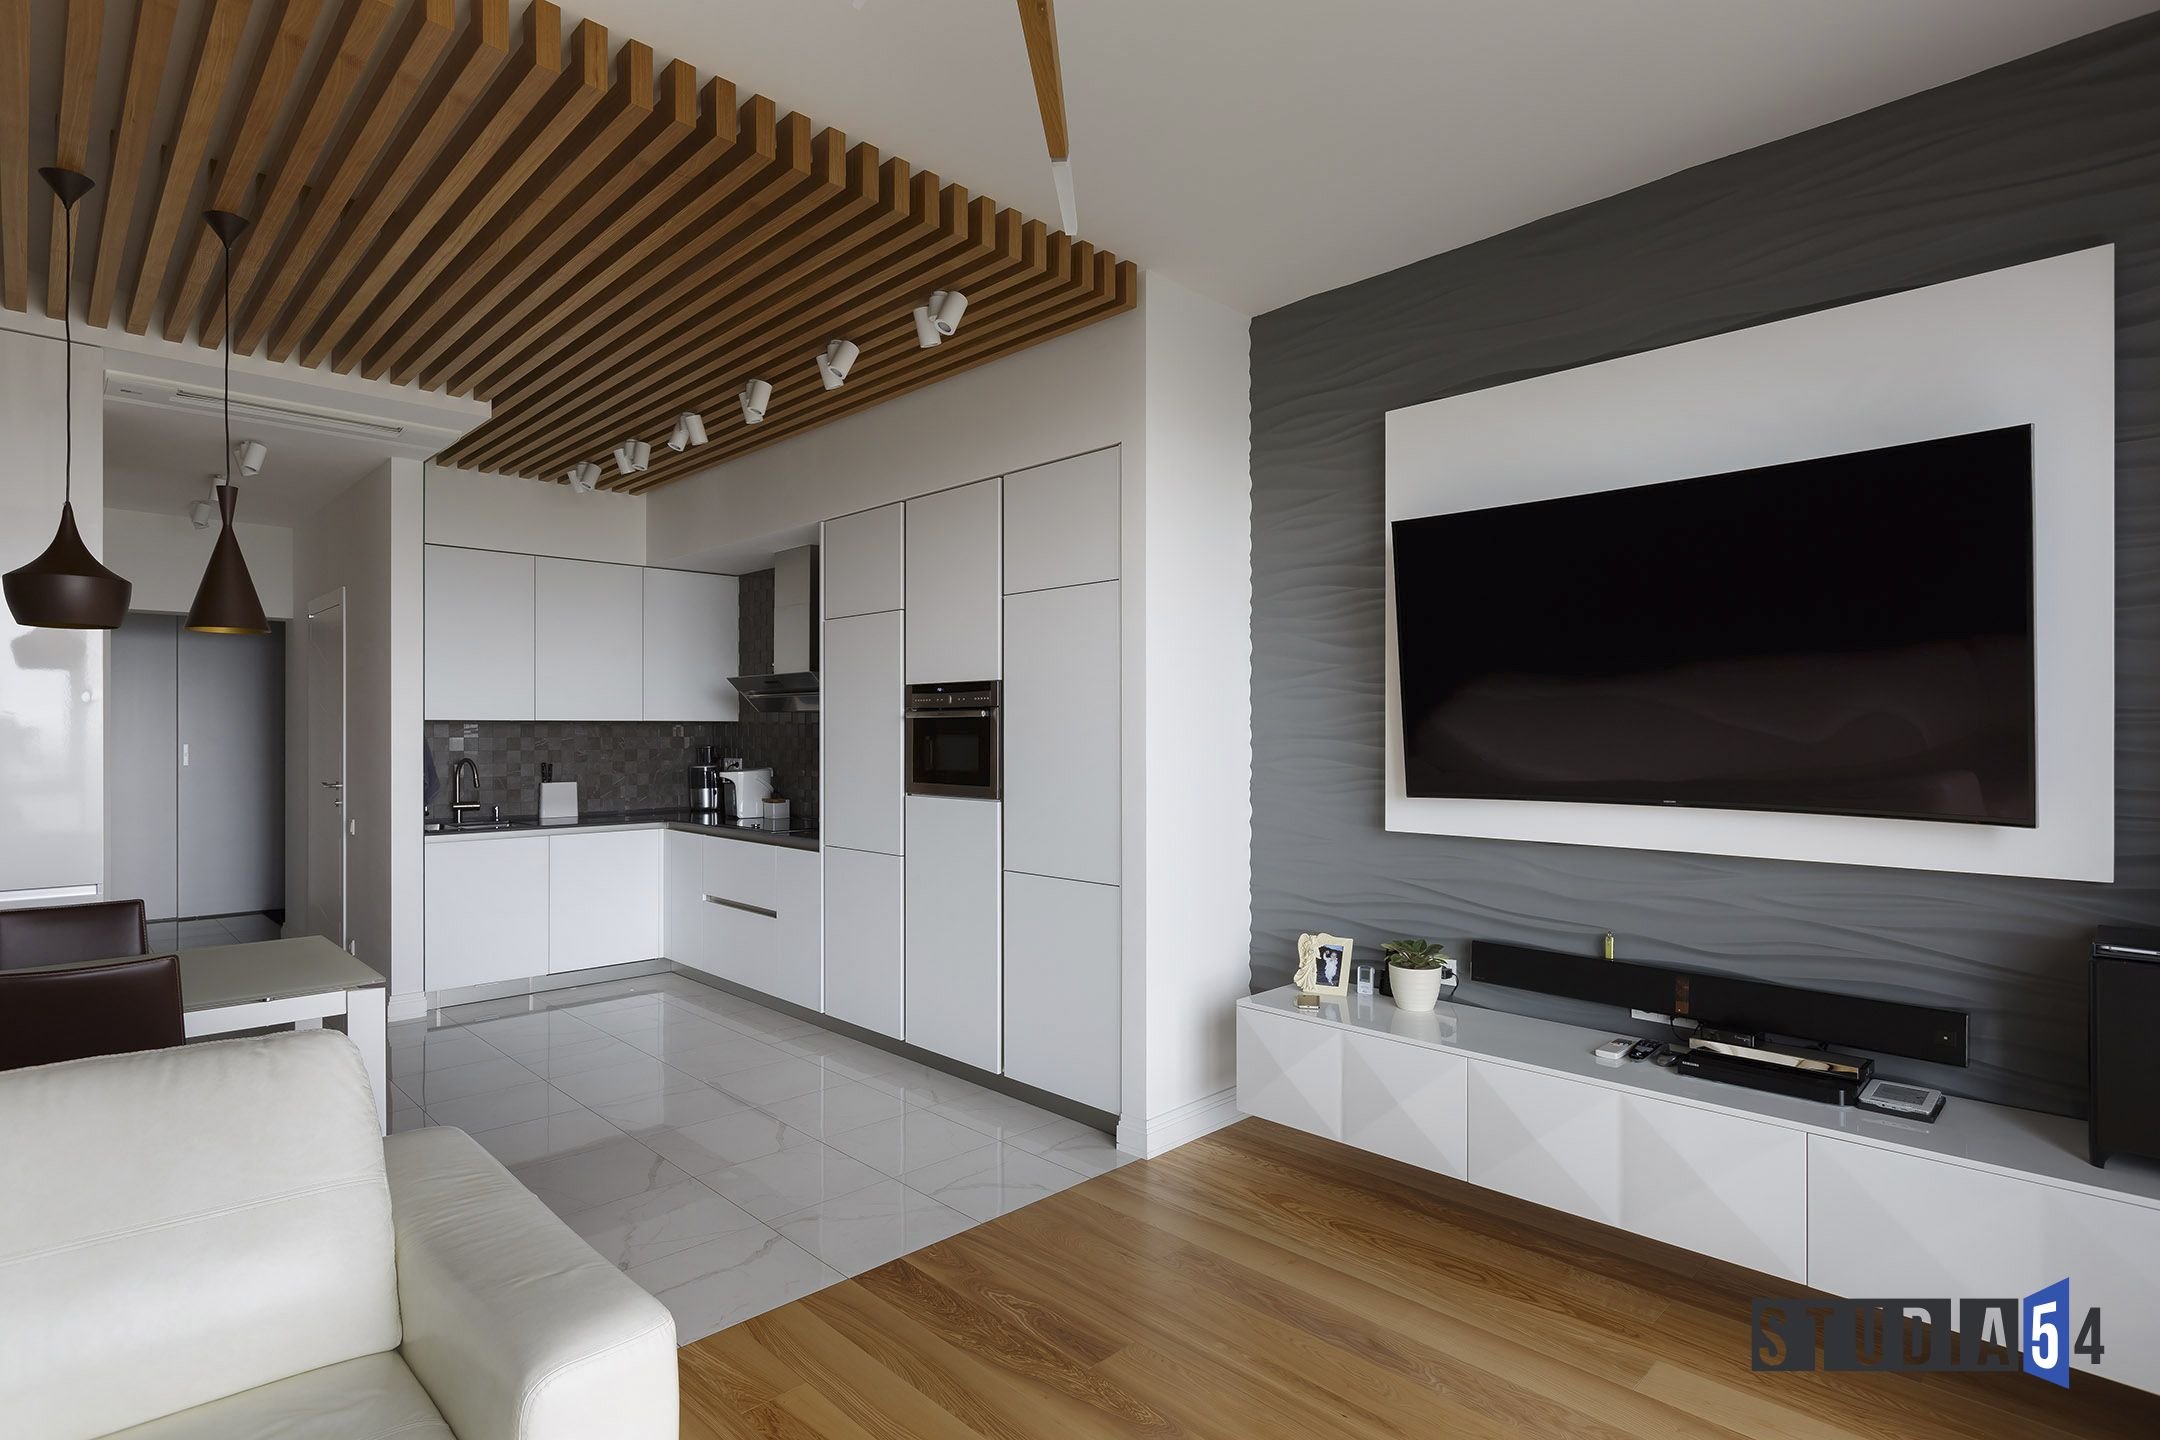 85 квадратных метров. Кухня гостиная с ТВ зоной. Кухня гостиная с телевизором. Кухня в гостиной рядом с телевизором. Кухня и телевизор на одной стене.